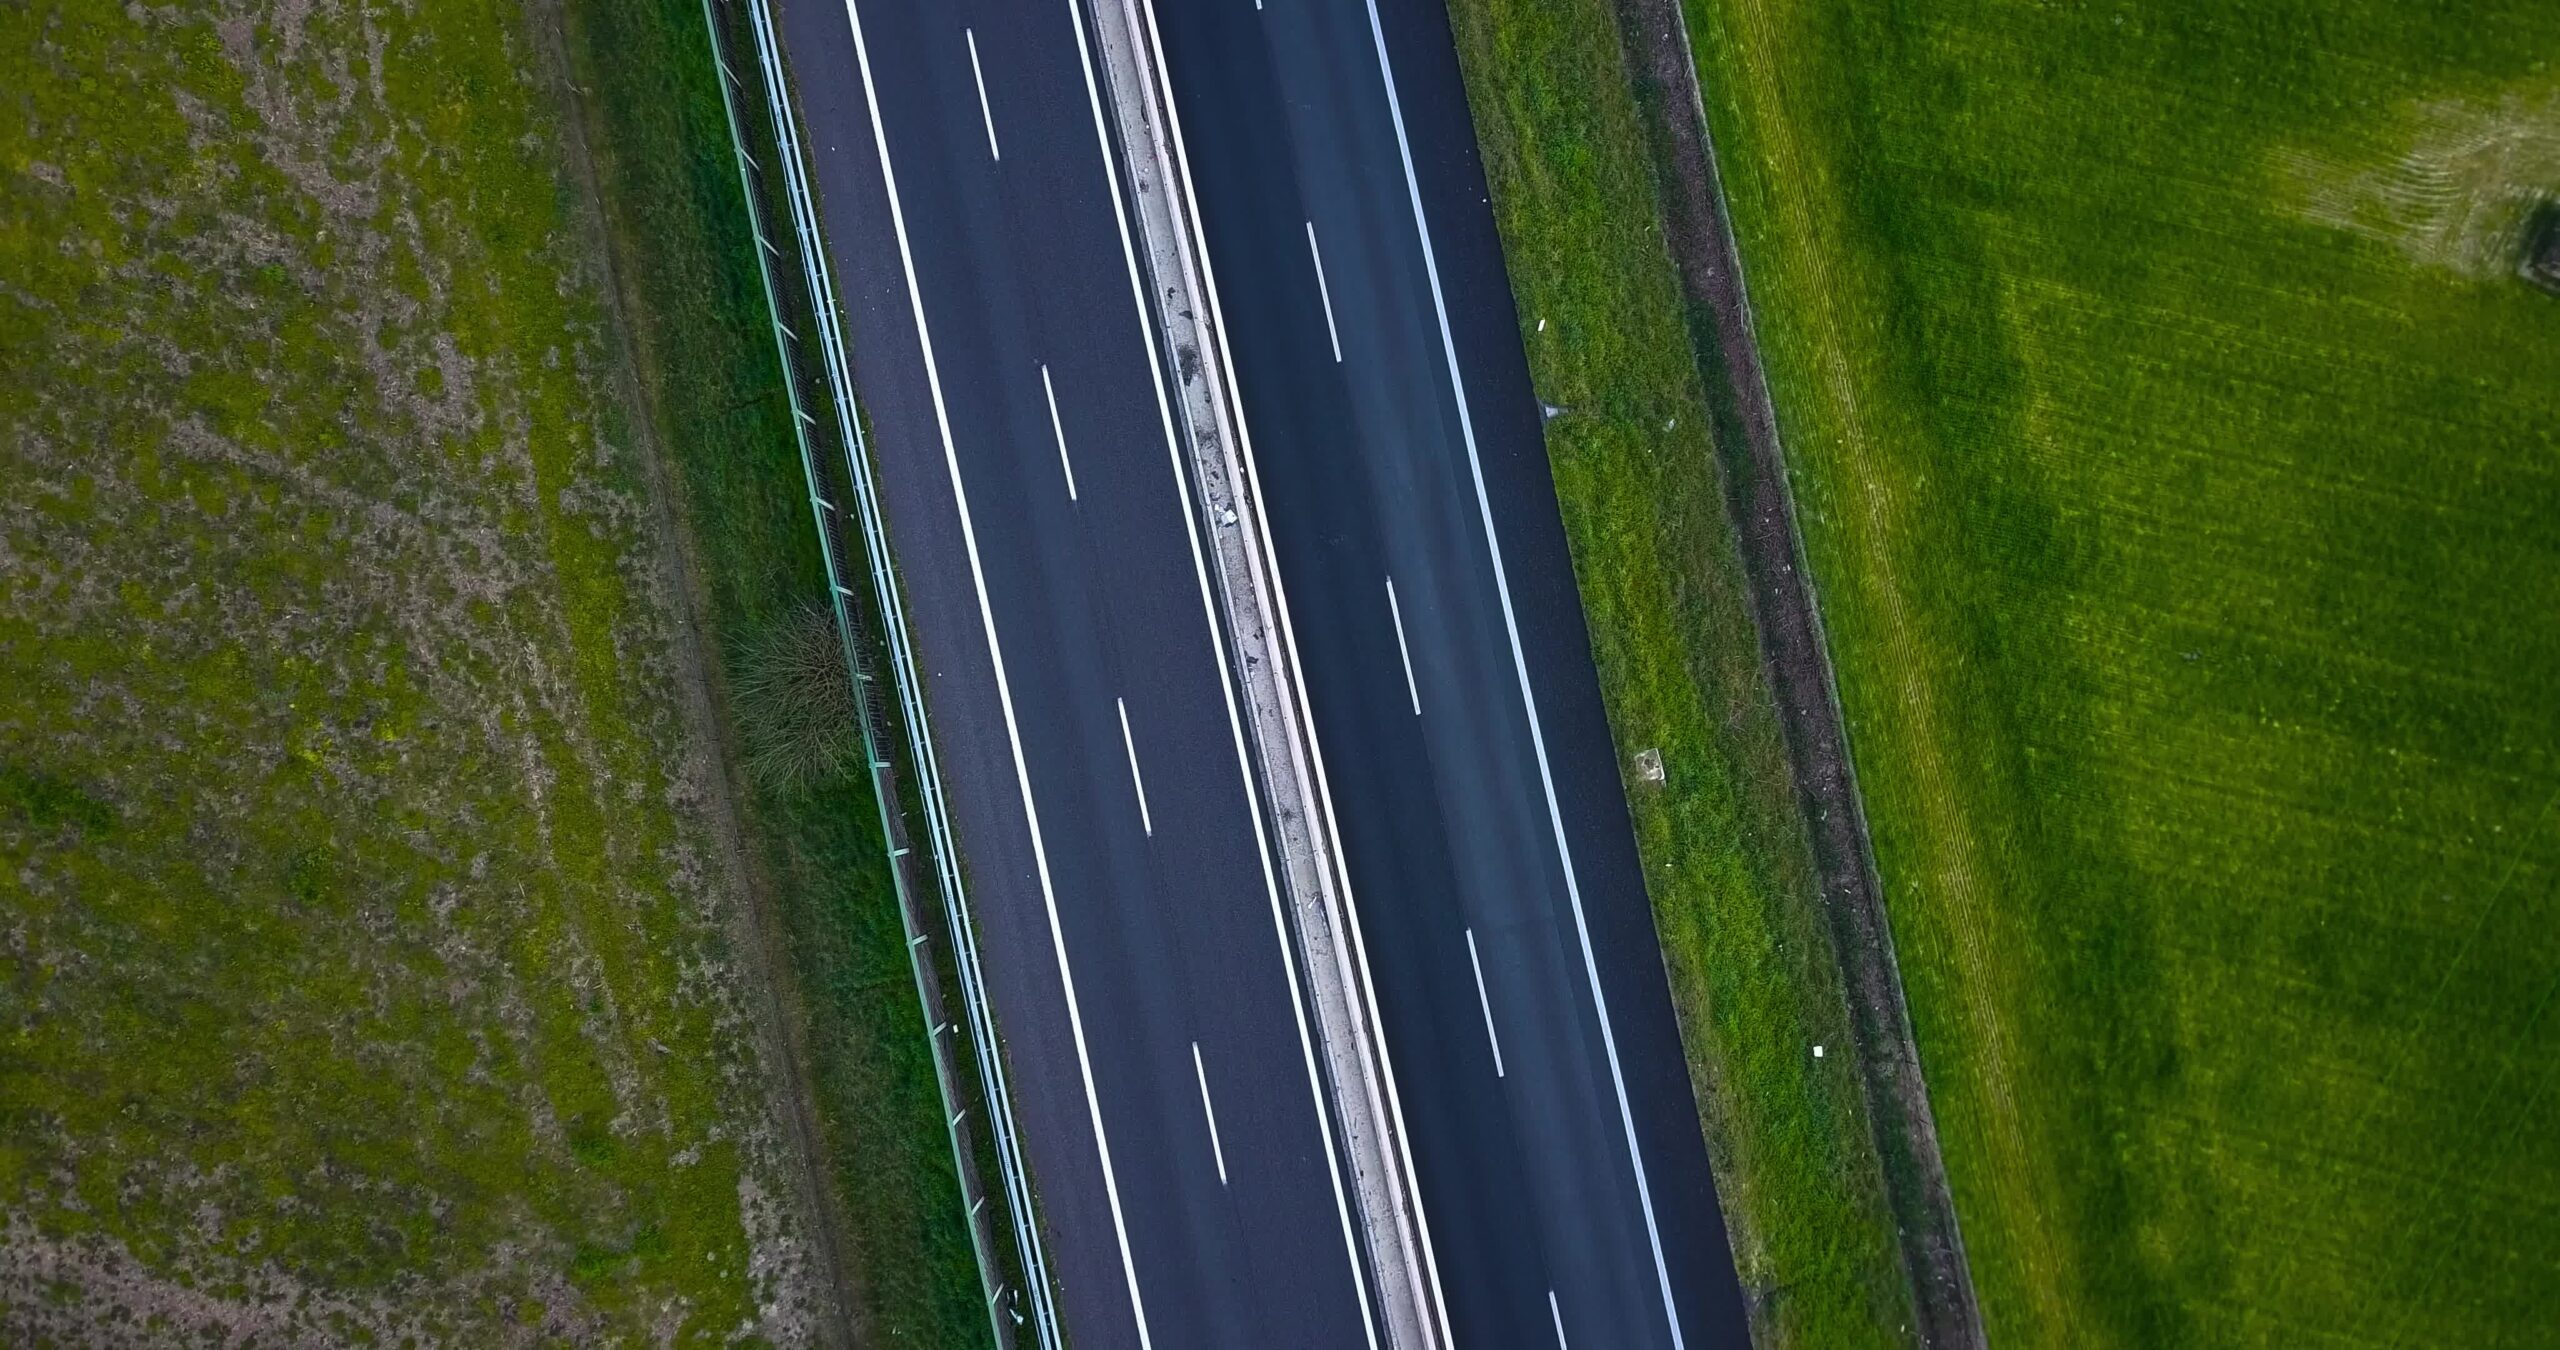 Strada asfaltata divisa con strisce bianche nella zona rurale